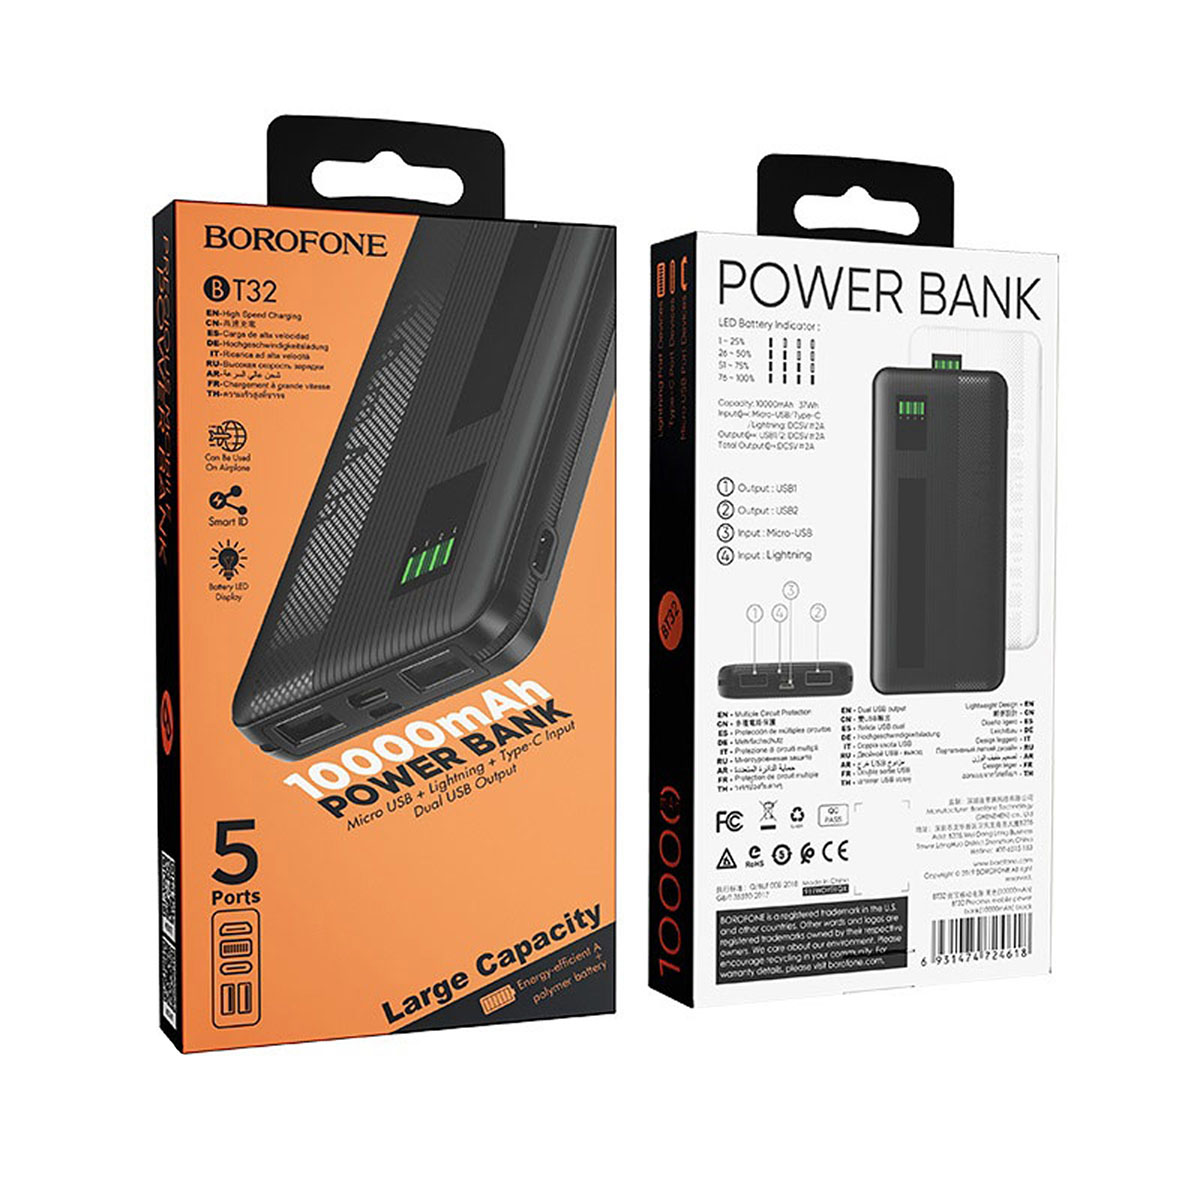 Внешний портативный аккумулятор, Power Bank BOROFONE BT32 Precious, 10000 mAh, цвет черный